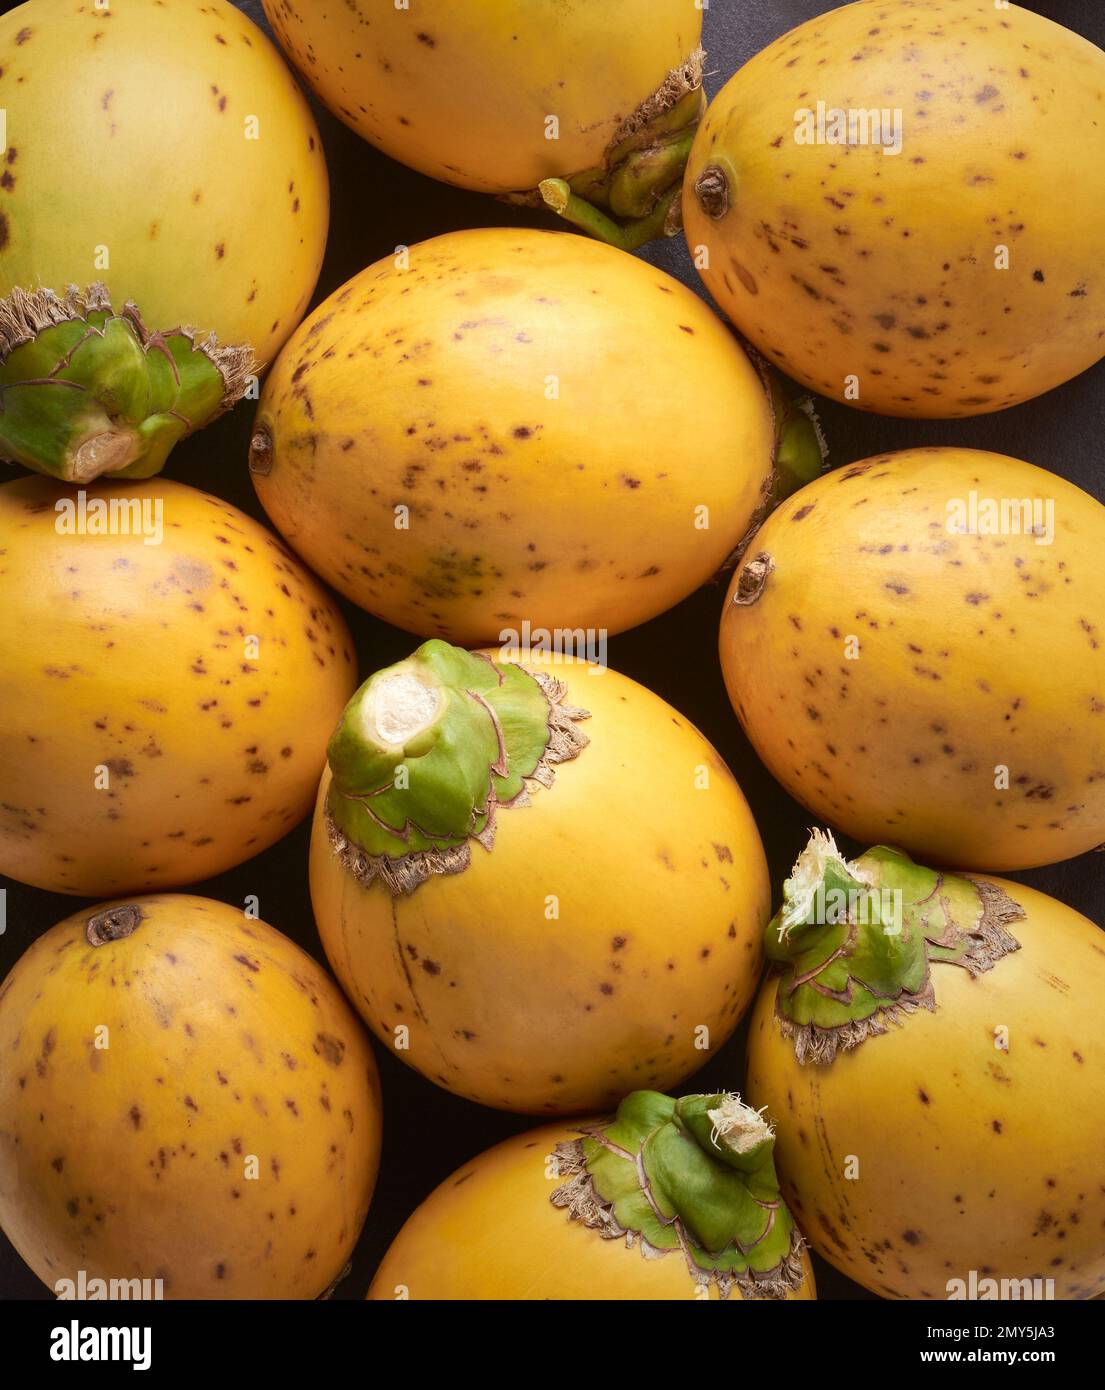 frutta fresca e gialla di areca, frutto della palma areca, di areca o di betel, primo piano di frutti tropicali e commercialmente importanti Foto Stock